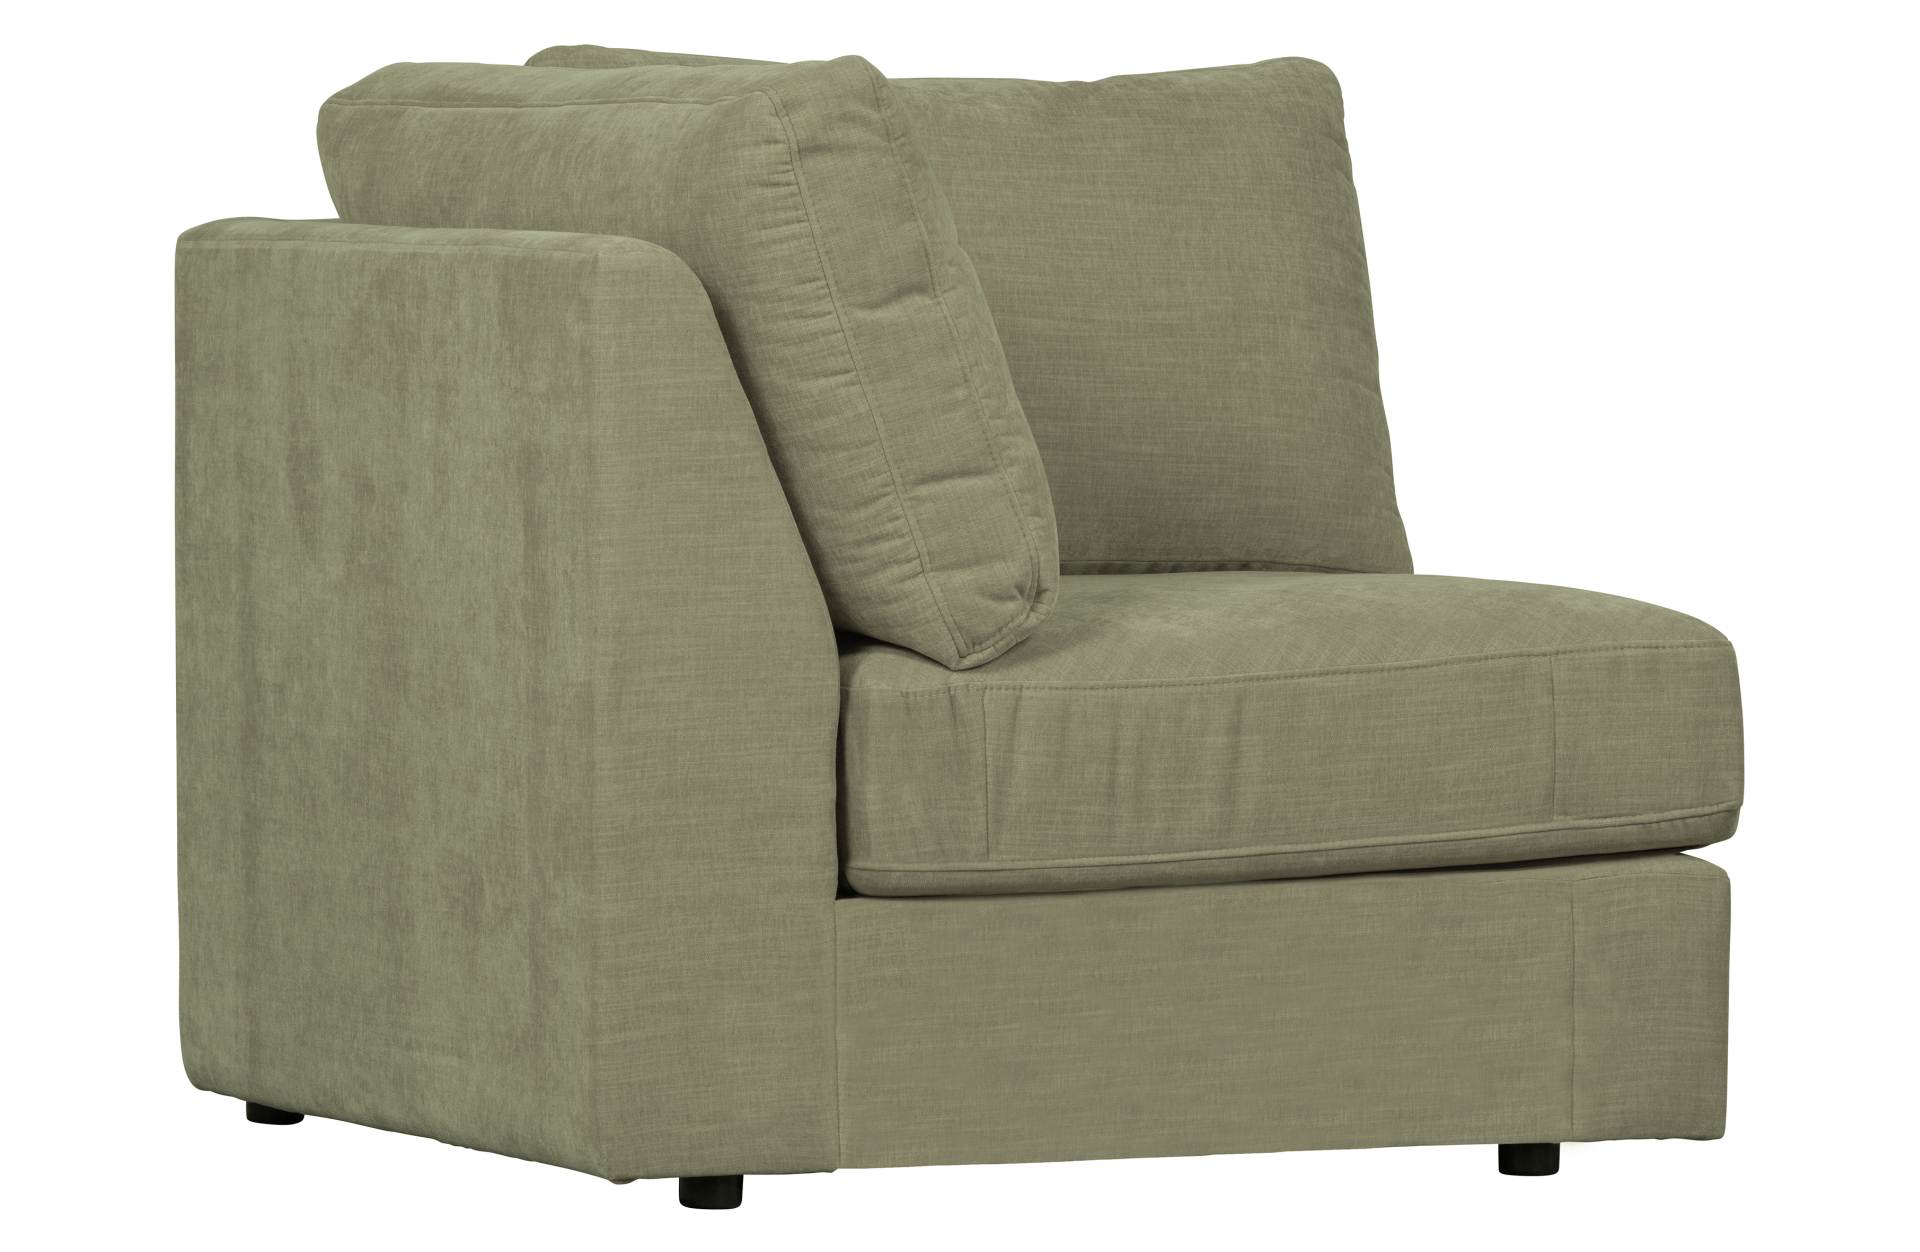 Das Modulsofa Family überzeugt mit seinem modernen Design. Das Eck Element wurde aus Gewebe-Stoff gefertigt, welcher einen einen grünen Farbton besitzen. Das Gestell ist aus Metall und hat eine schwarze Farbe. Das Element hat eine Sitzhöhe von 44 cm.